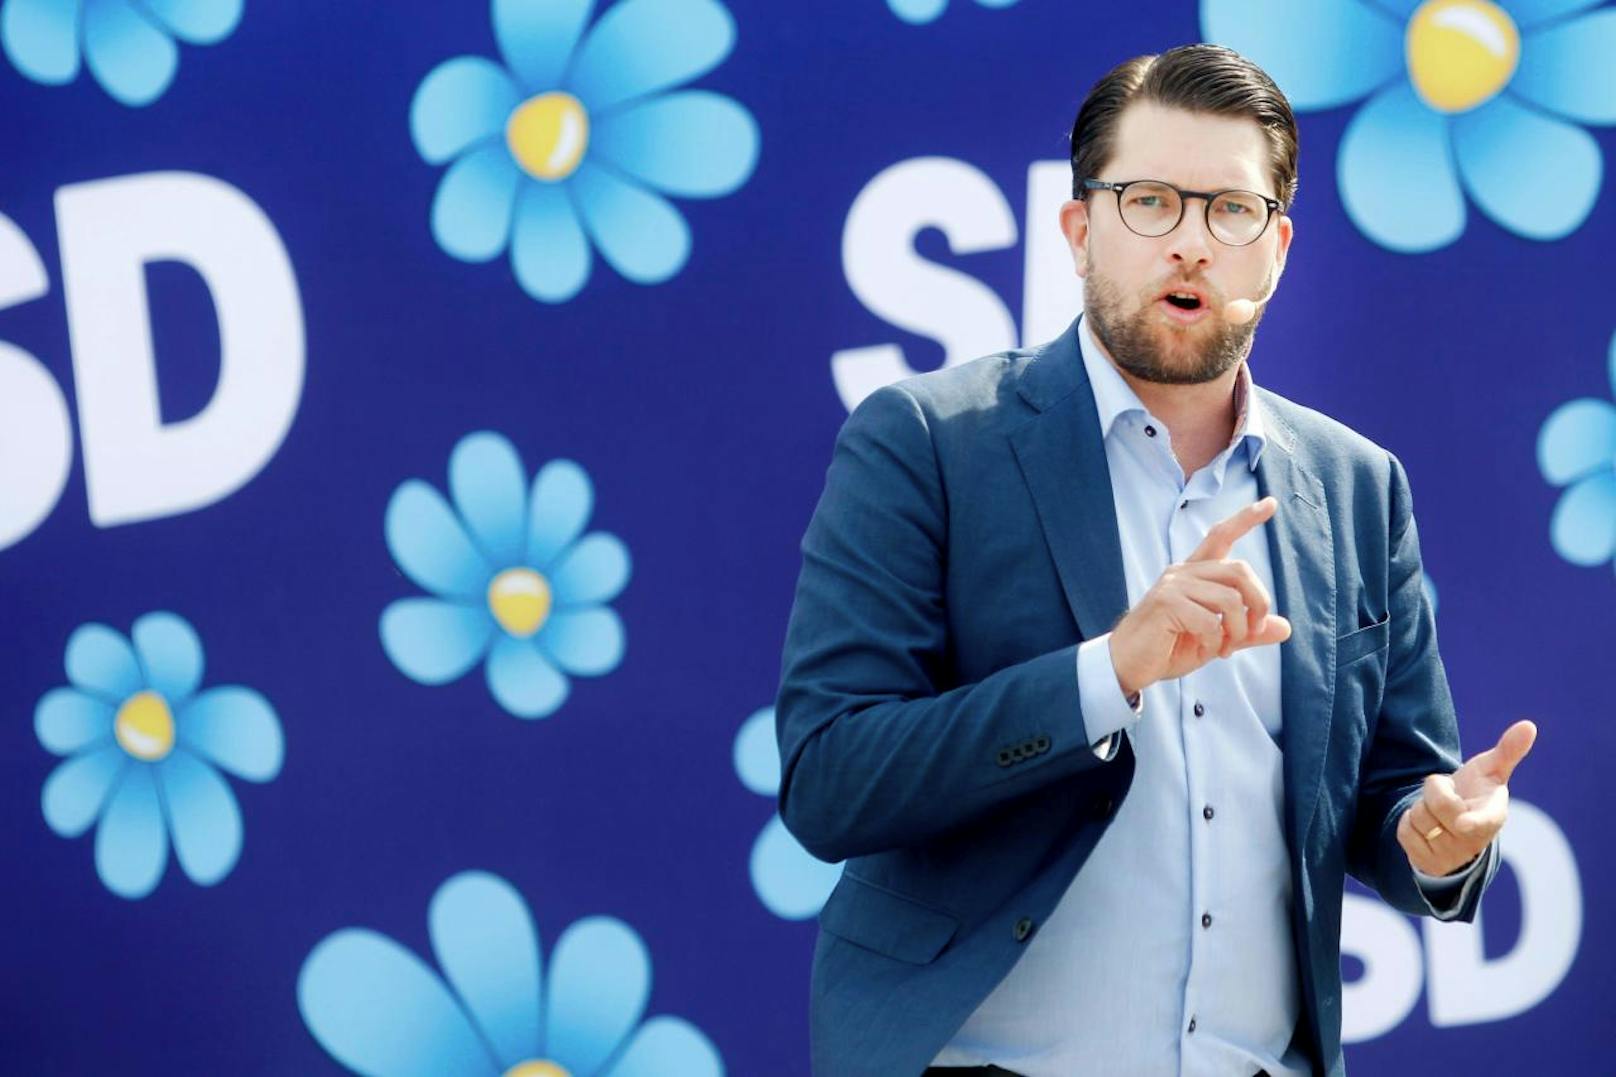 Die Schwedendemokraten (SD) mit Parteichef Jimmie Akesson dürften bei der Parlamentswahl am 9. September zu den großen Gewinnern gehören.